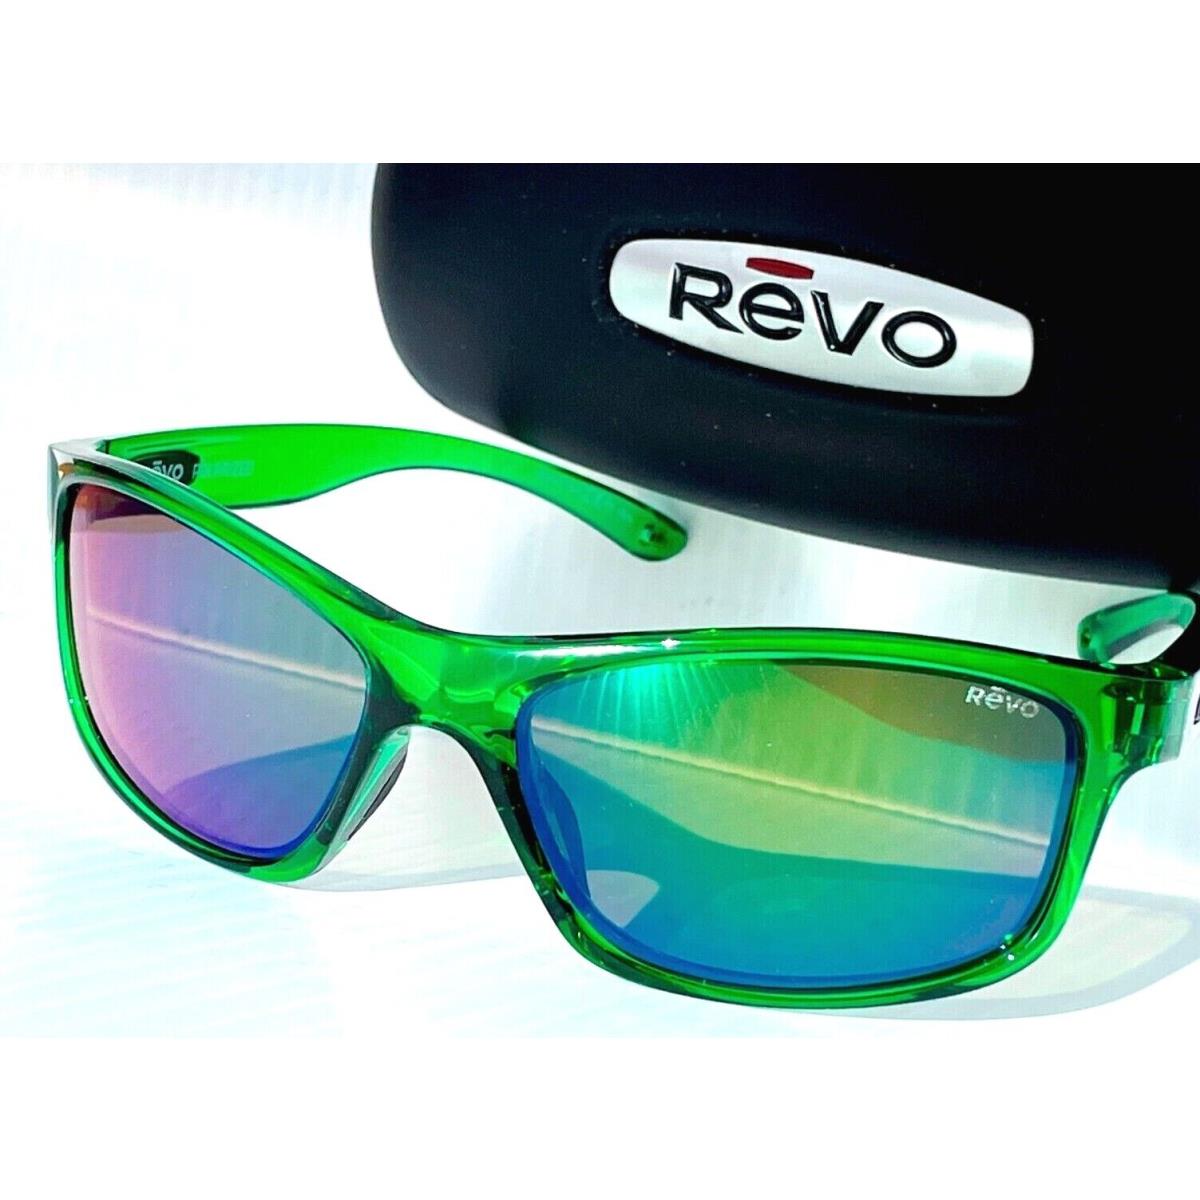 Revo sunglasses Harness - Green Frame, Green Lens 2